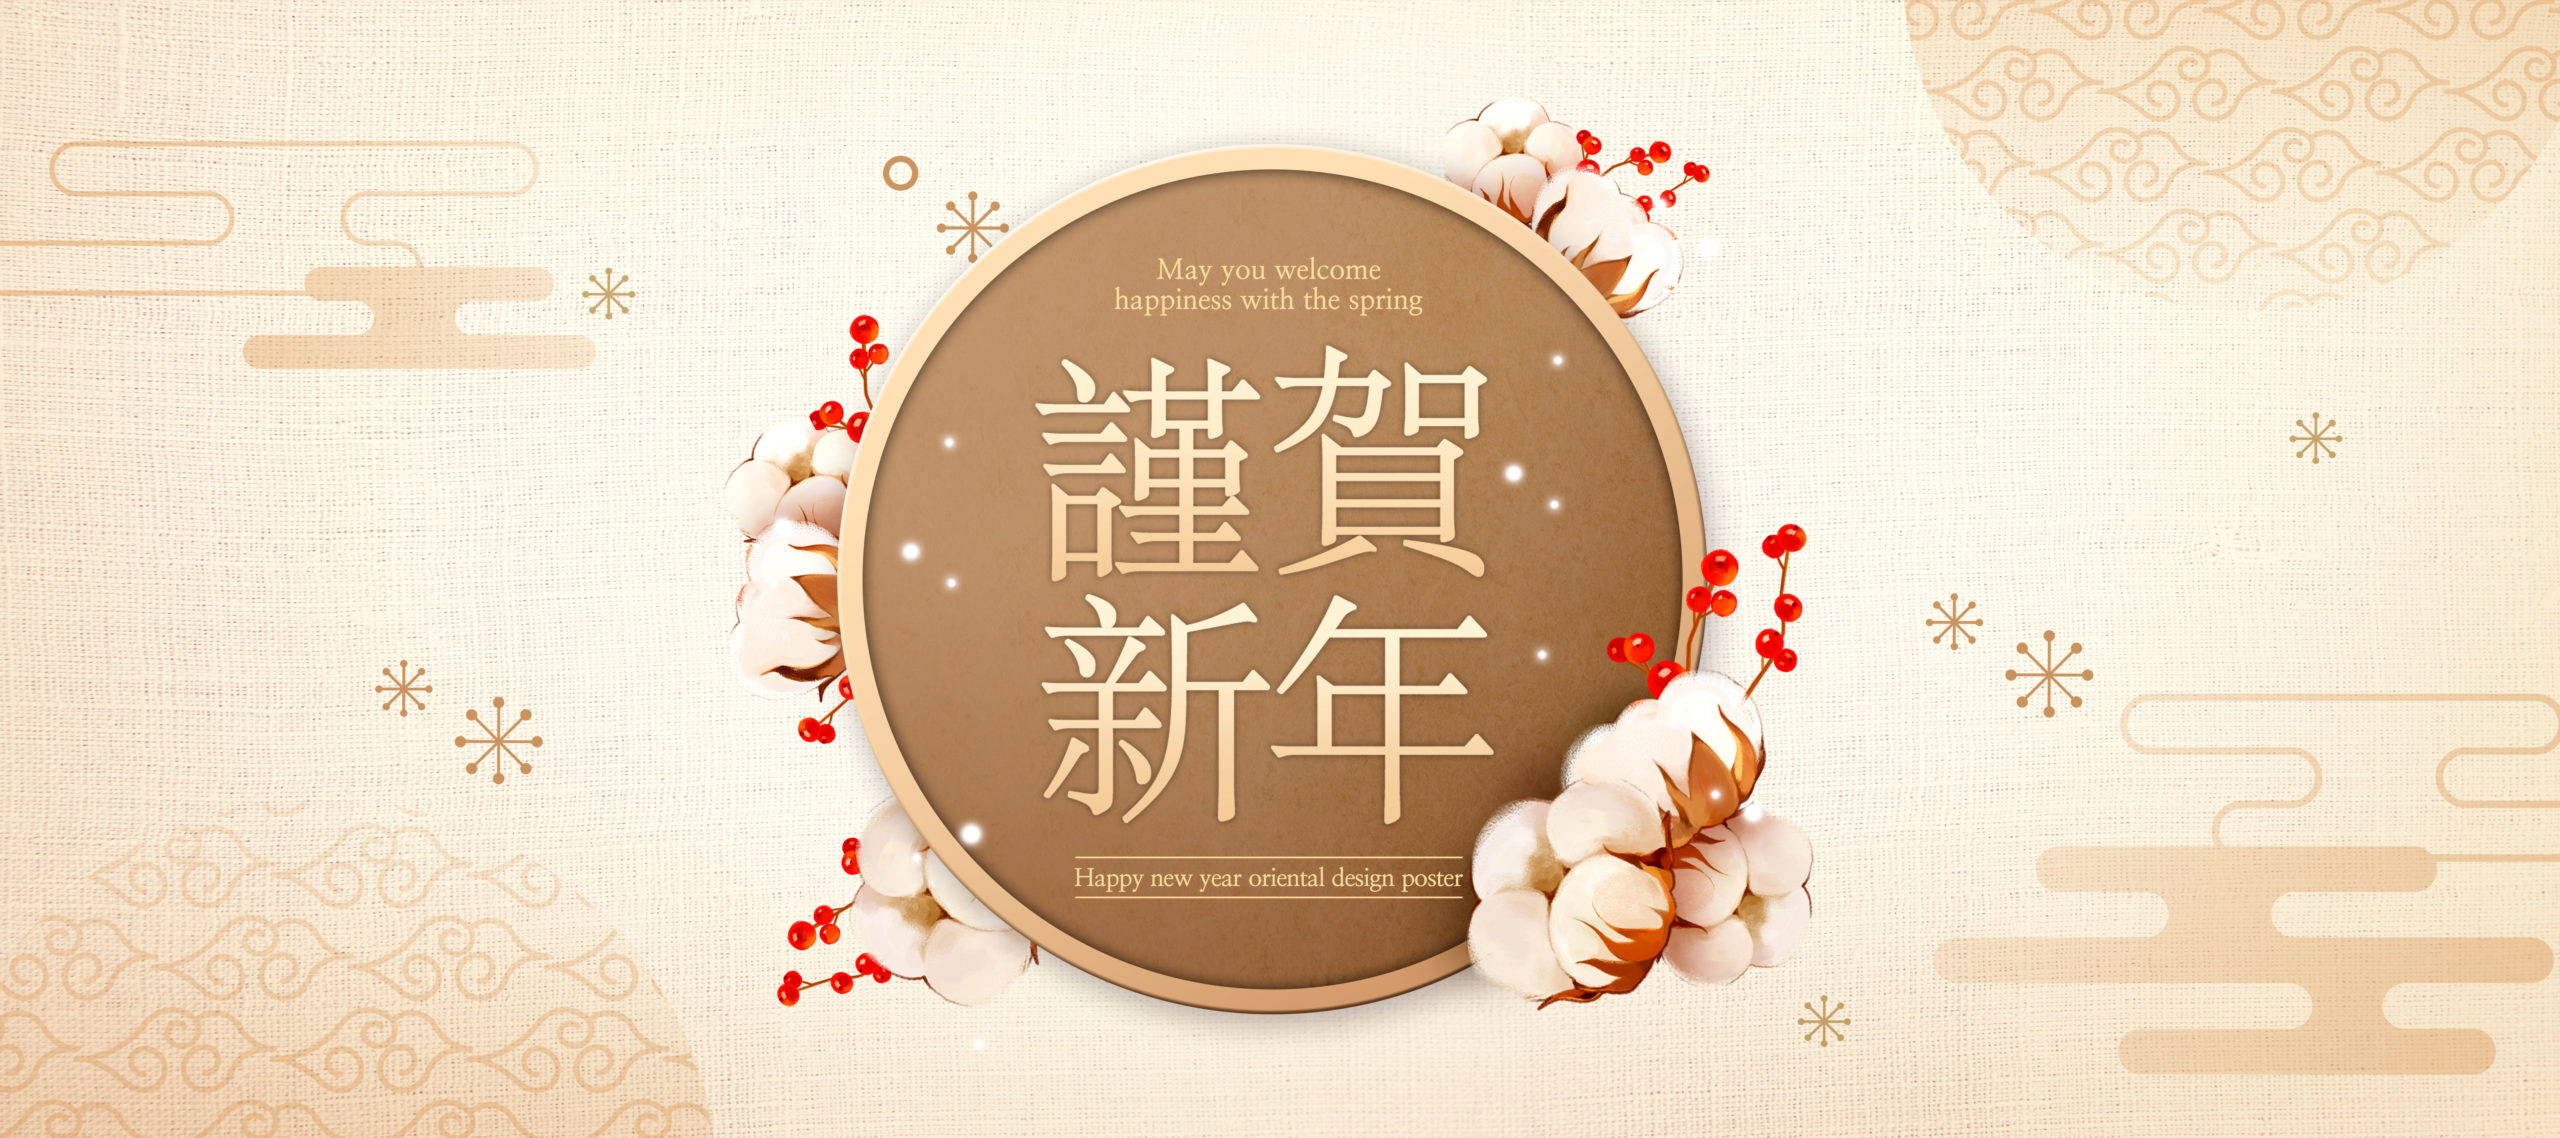 2020中国新年恭贺新春主题长Banner图设计插图